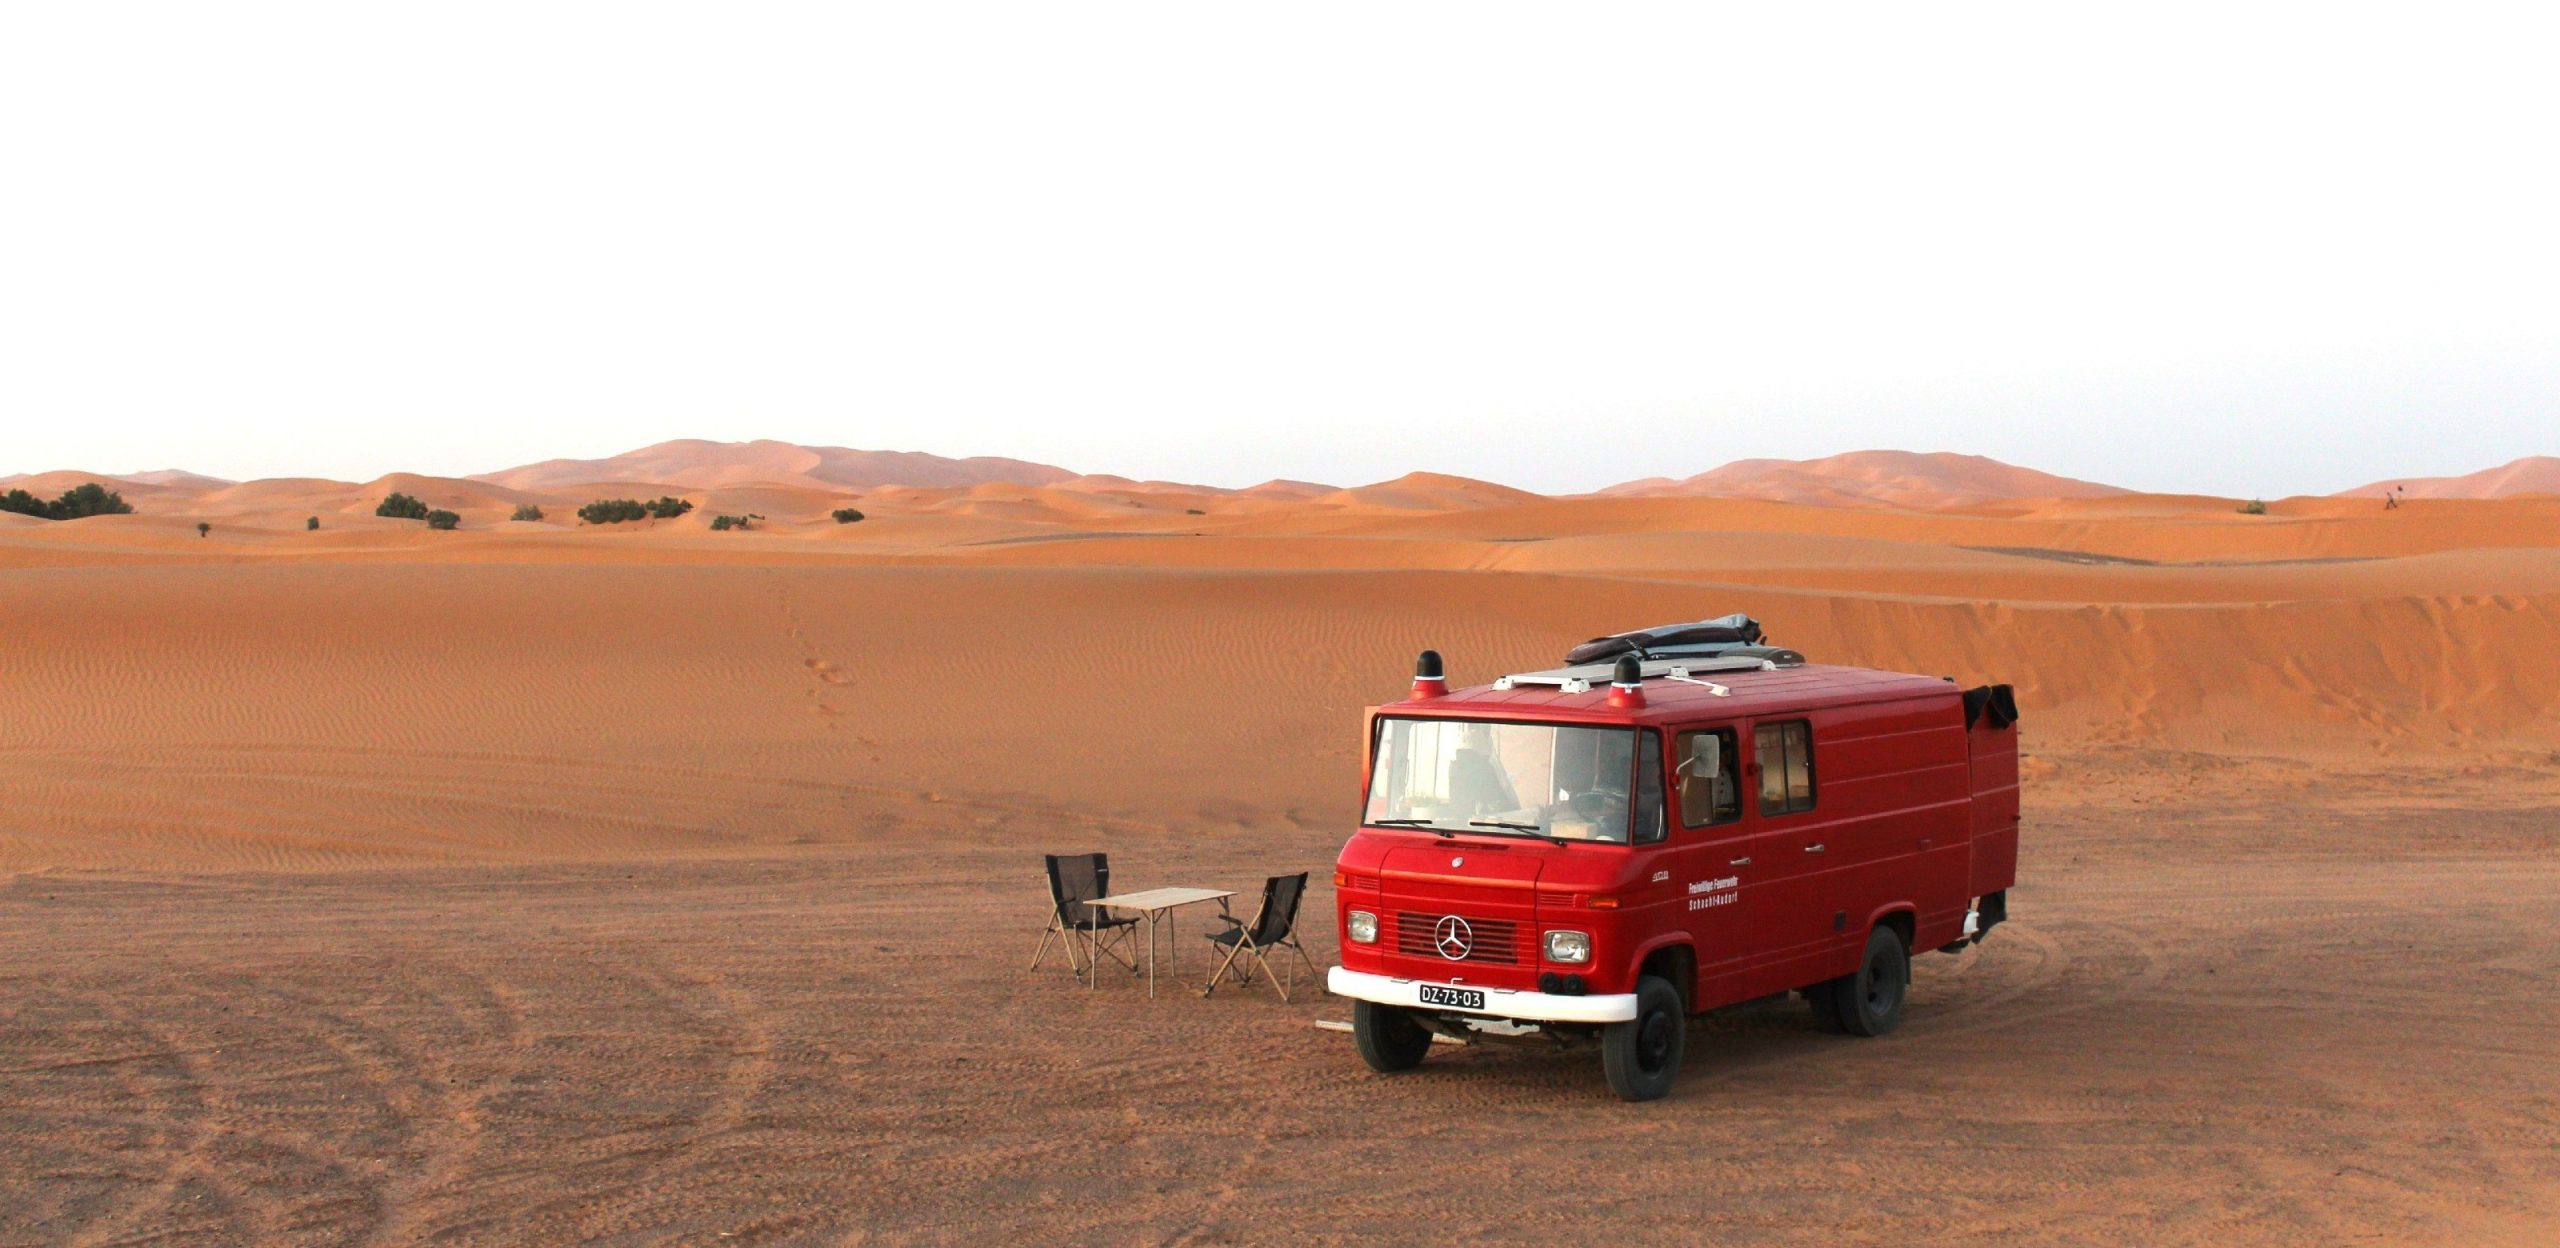 Chili camper in Morocco